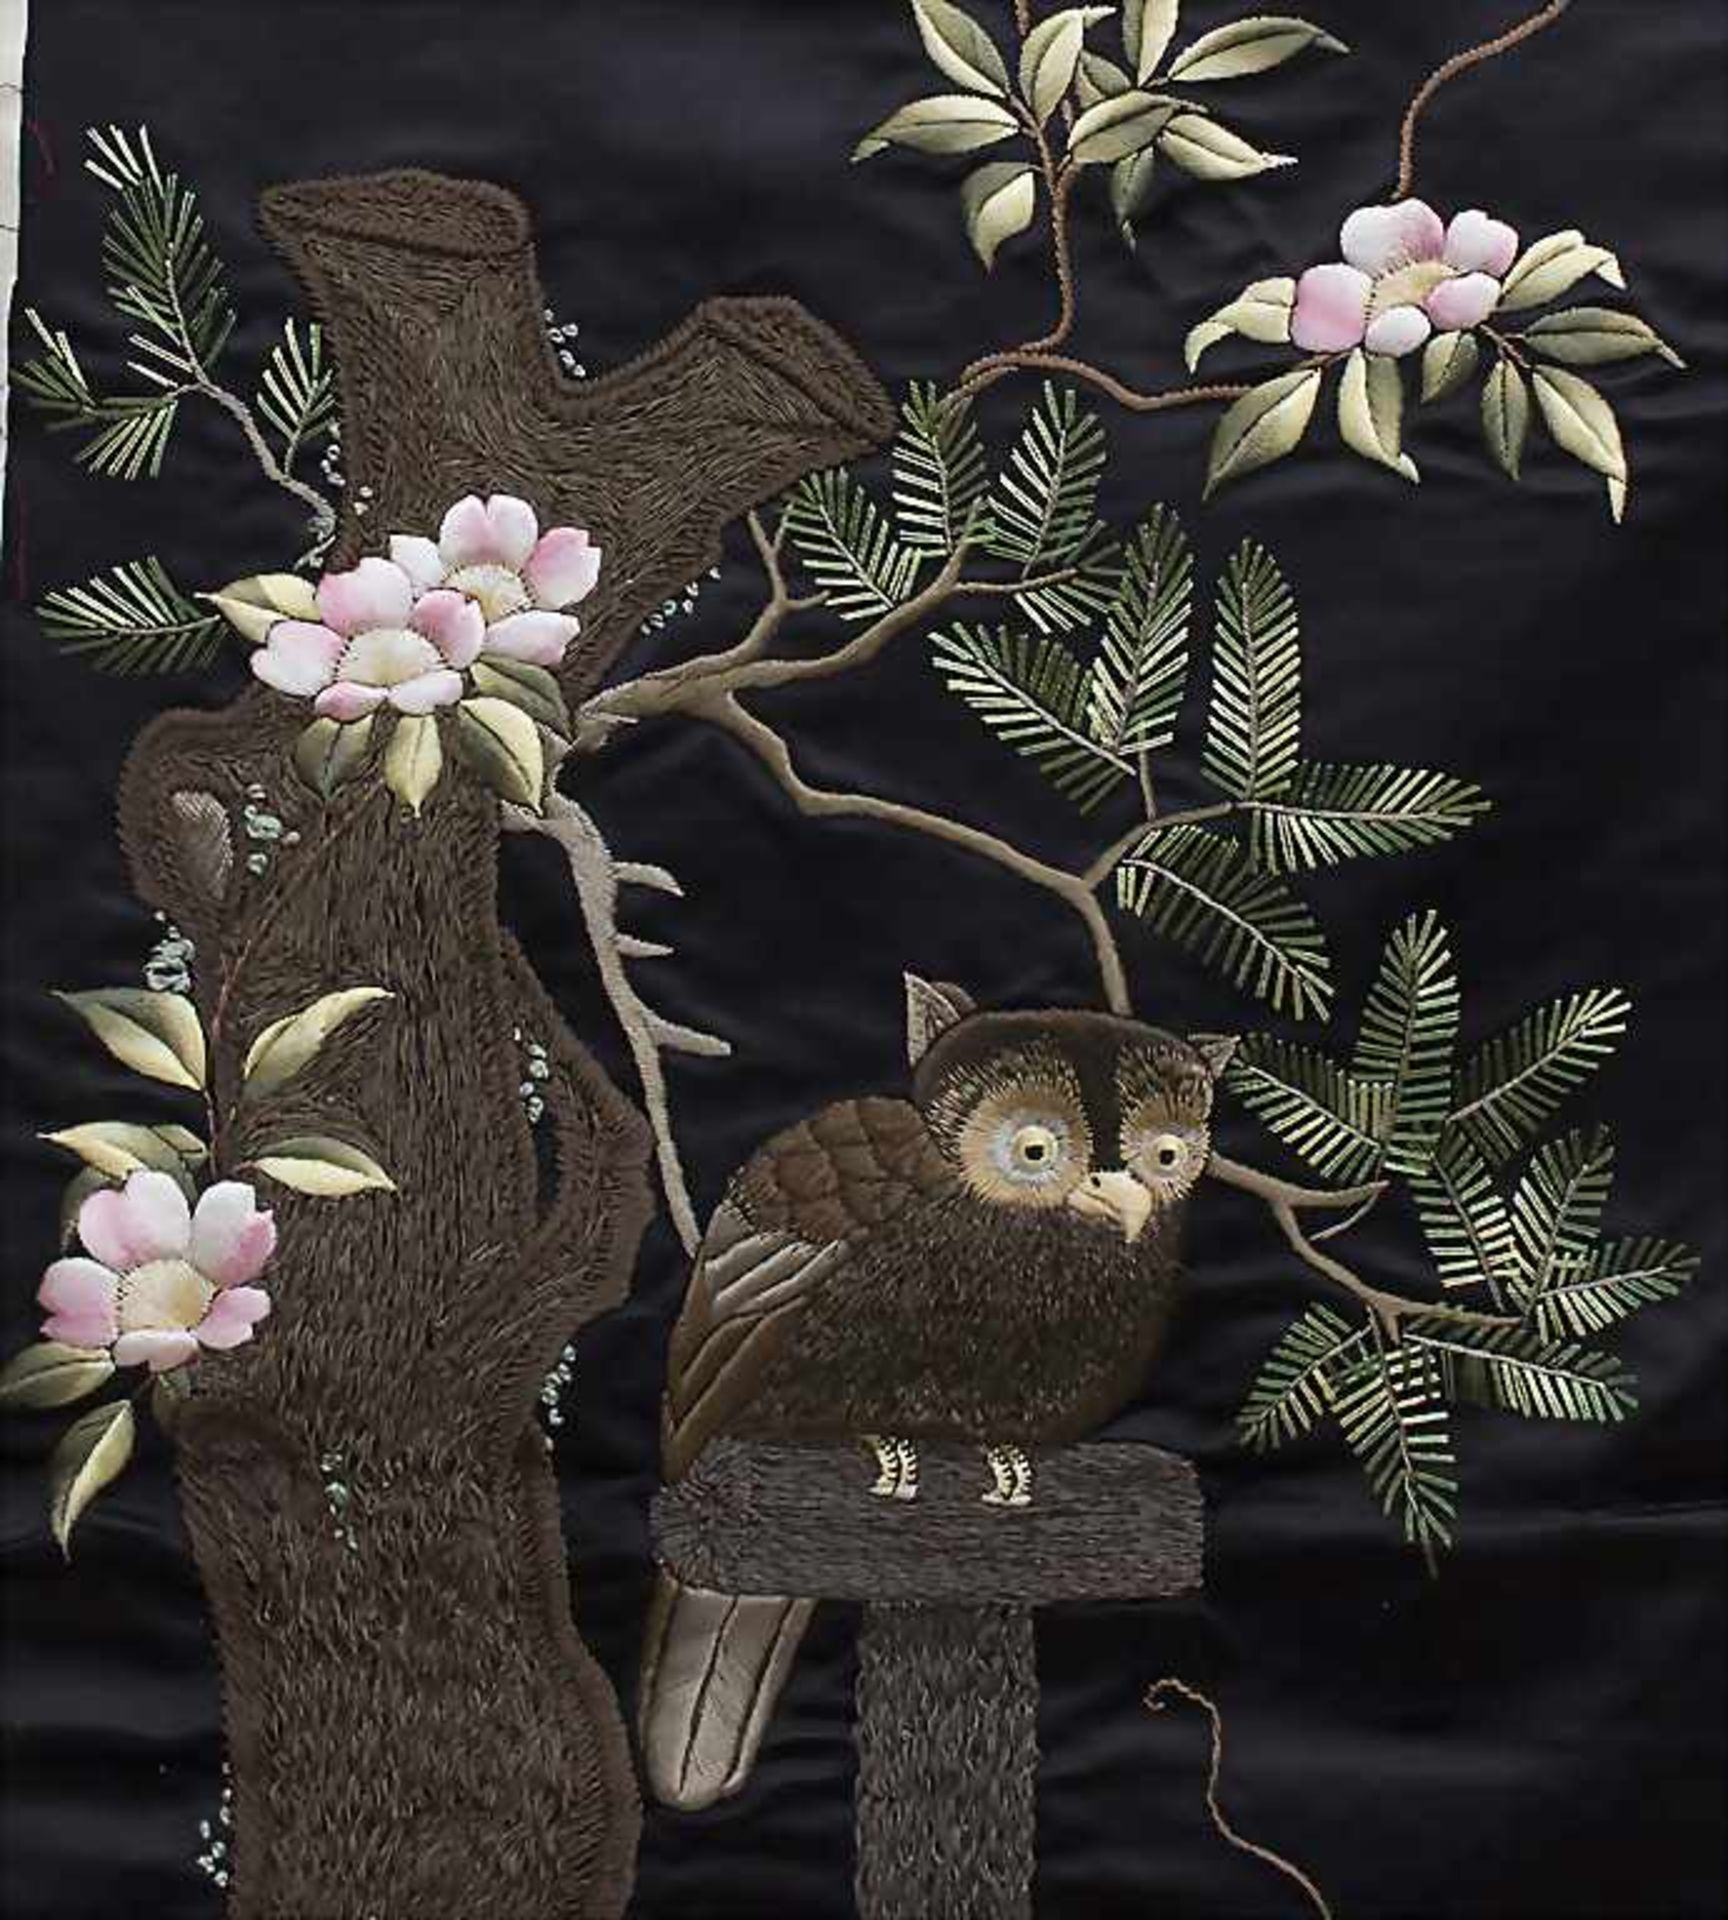 Seiden-Wandbehang 'Eule' / A silk wall hanging 'Owl', China, 1. Hälfte 20. Jh. - Bild 2 aus 3